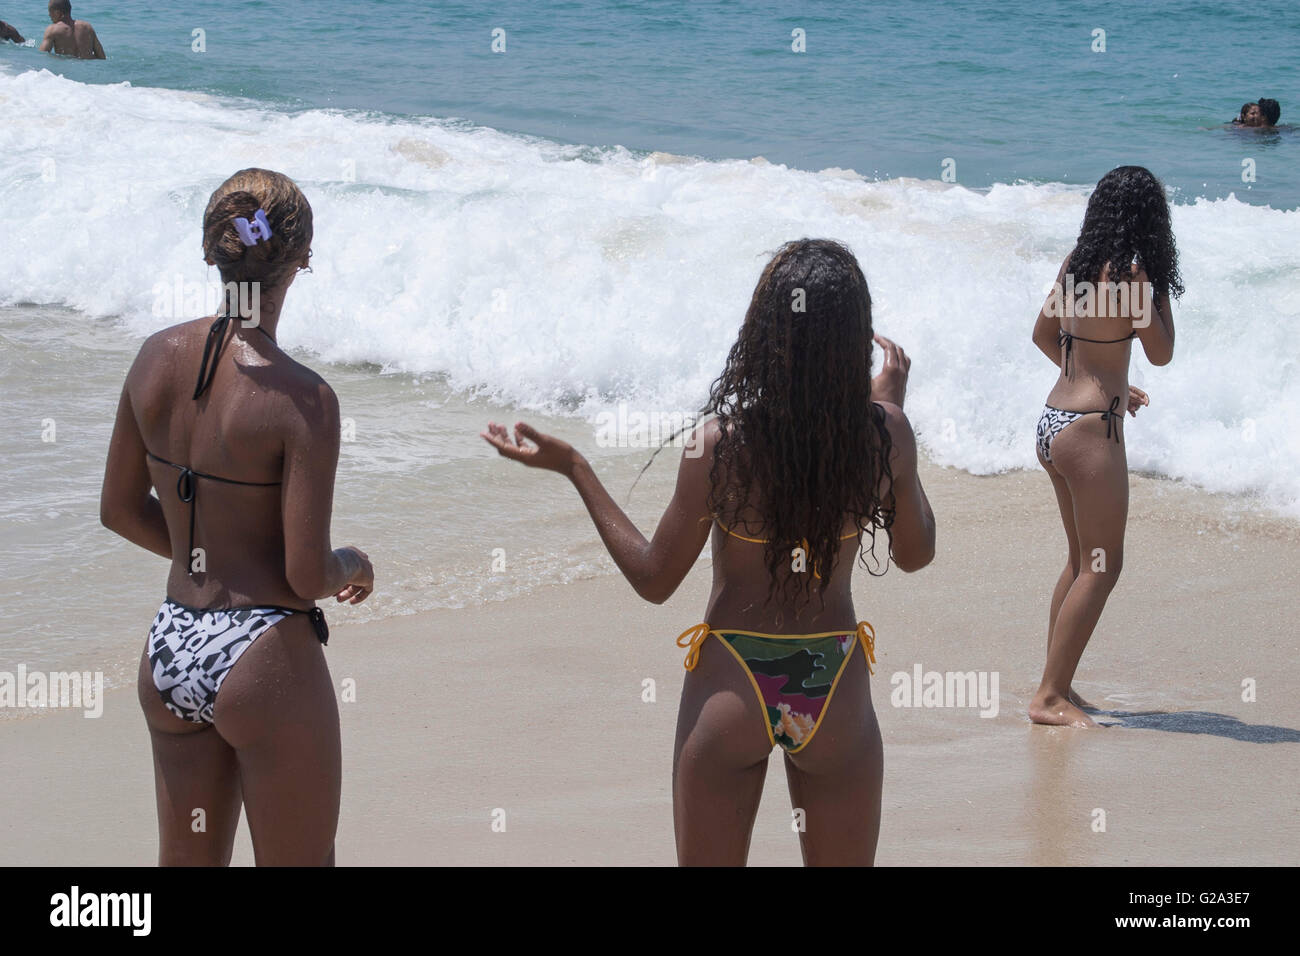 Brazilian Beach Babes